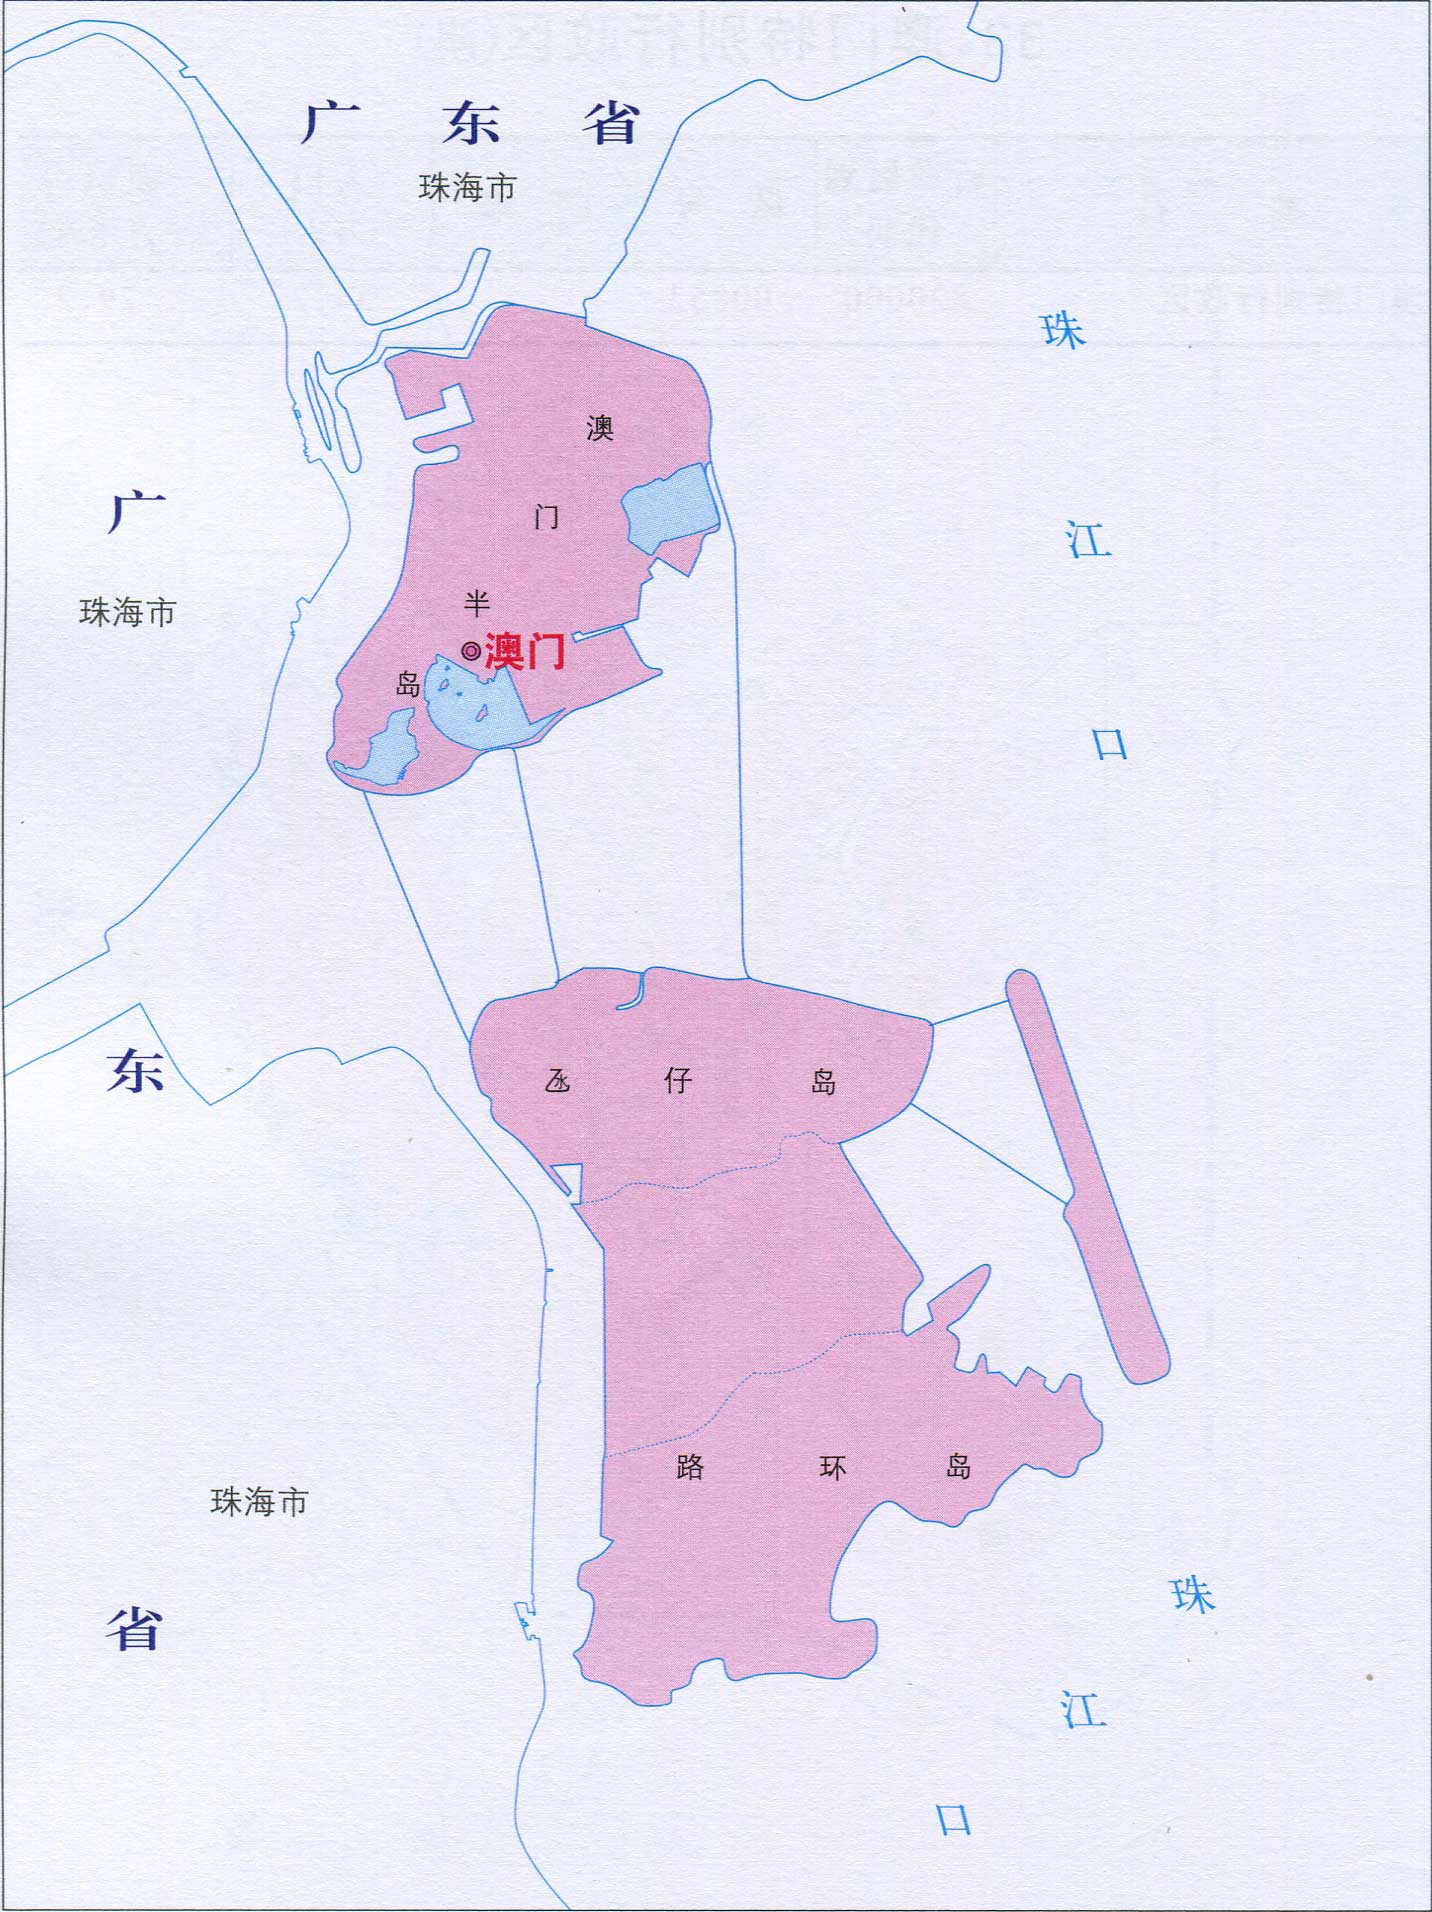 澳门特别行政区地图